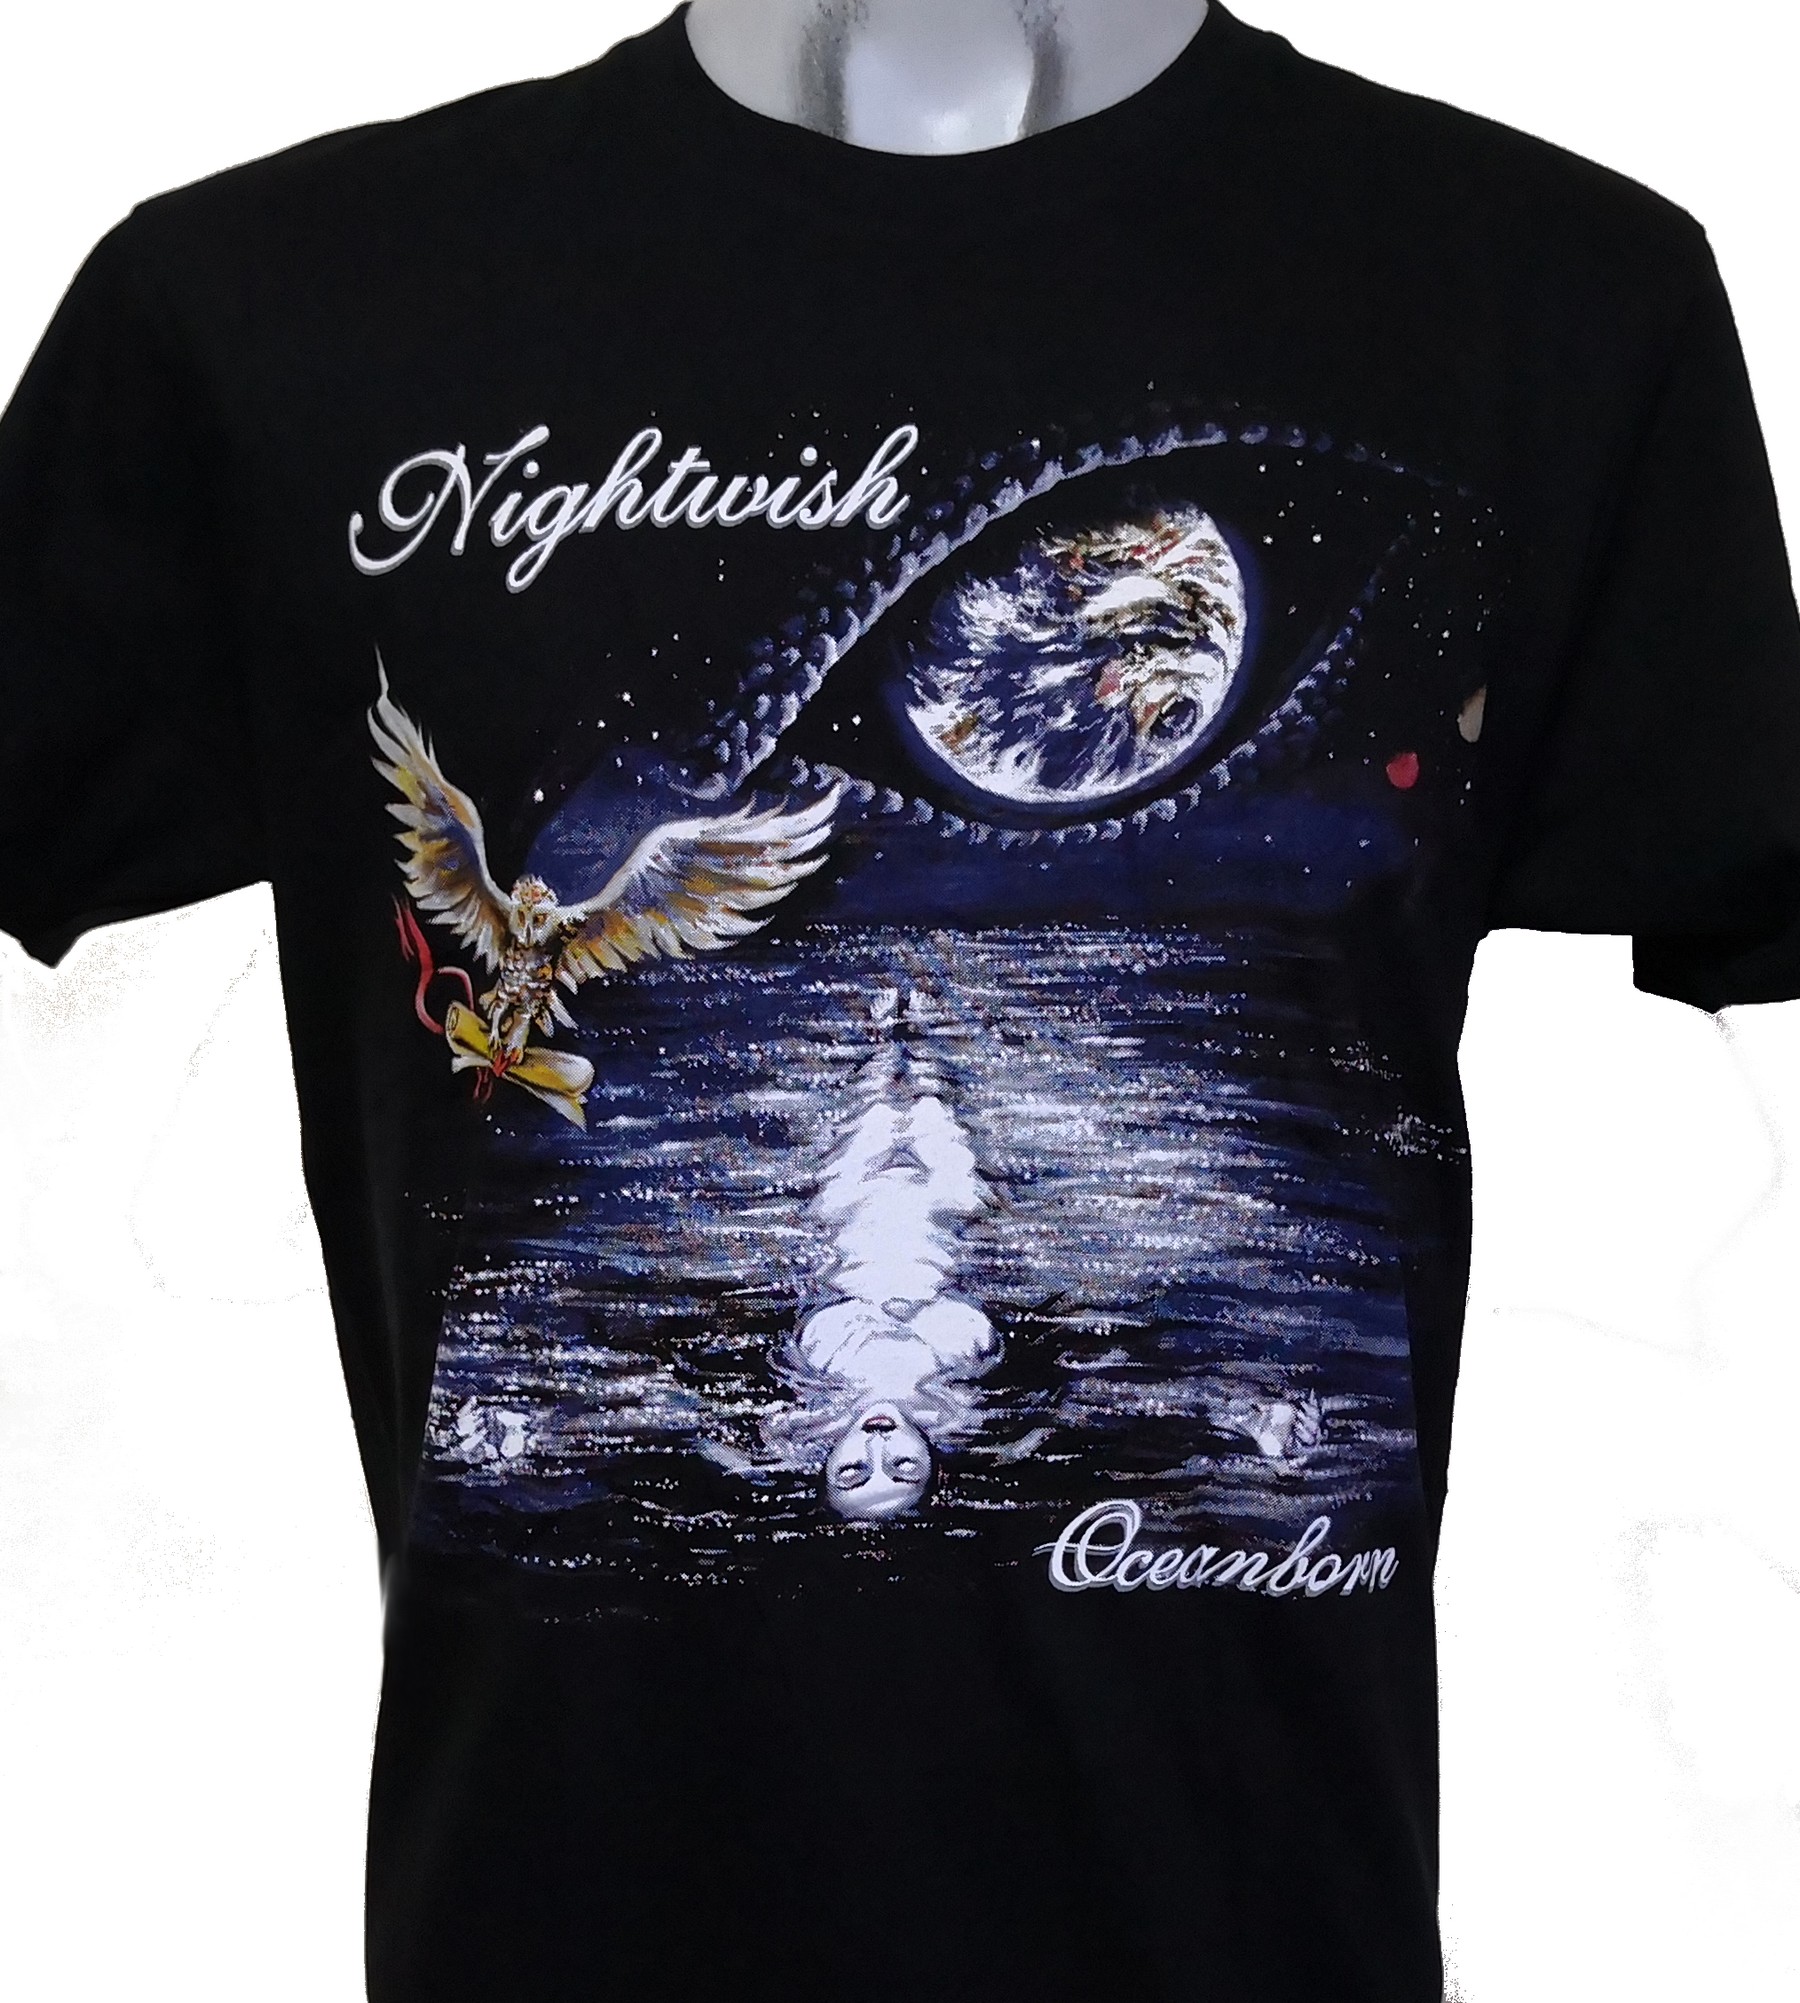 Nightwish t shirt Sizes S-6X 